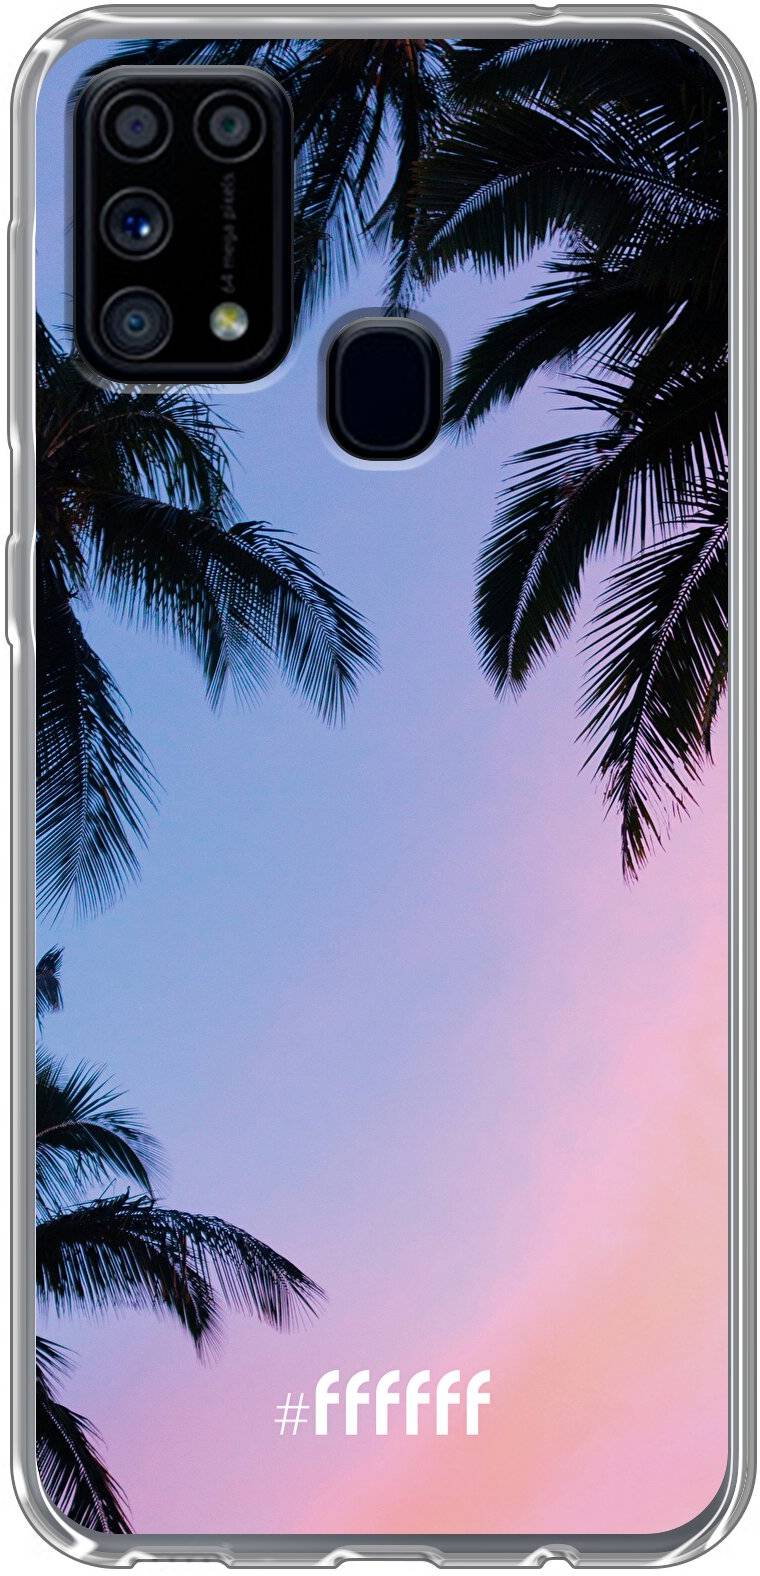 Sunset Palms Galaxy M31